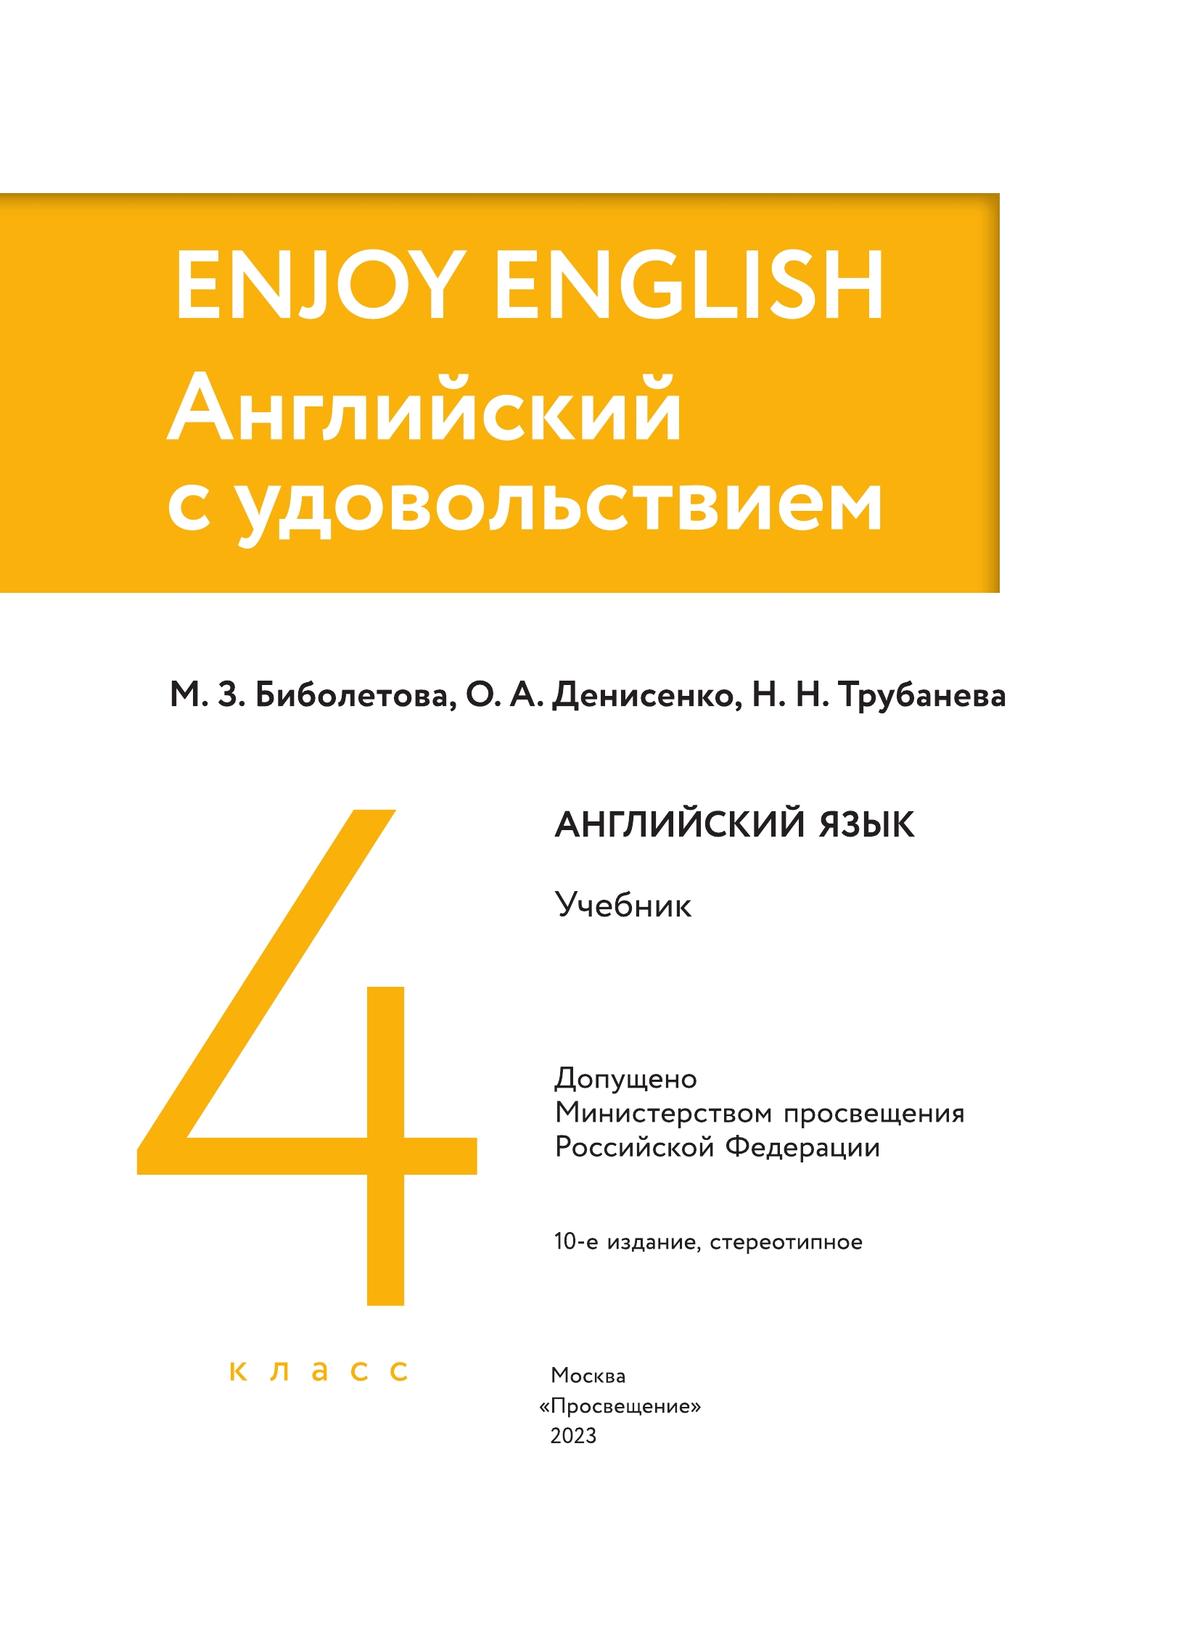 Unit 1. № 83. ГДЗ Английский язык Enjoy English 10 класс Биболетова. Помогите перевести на русский